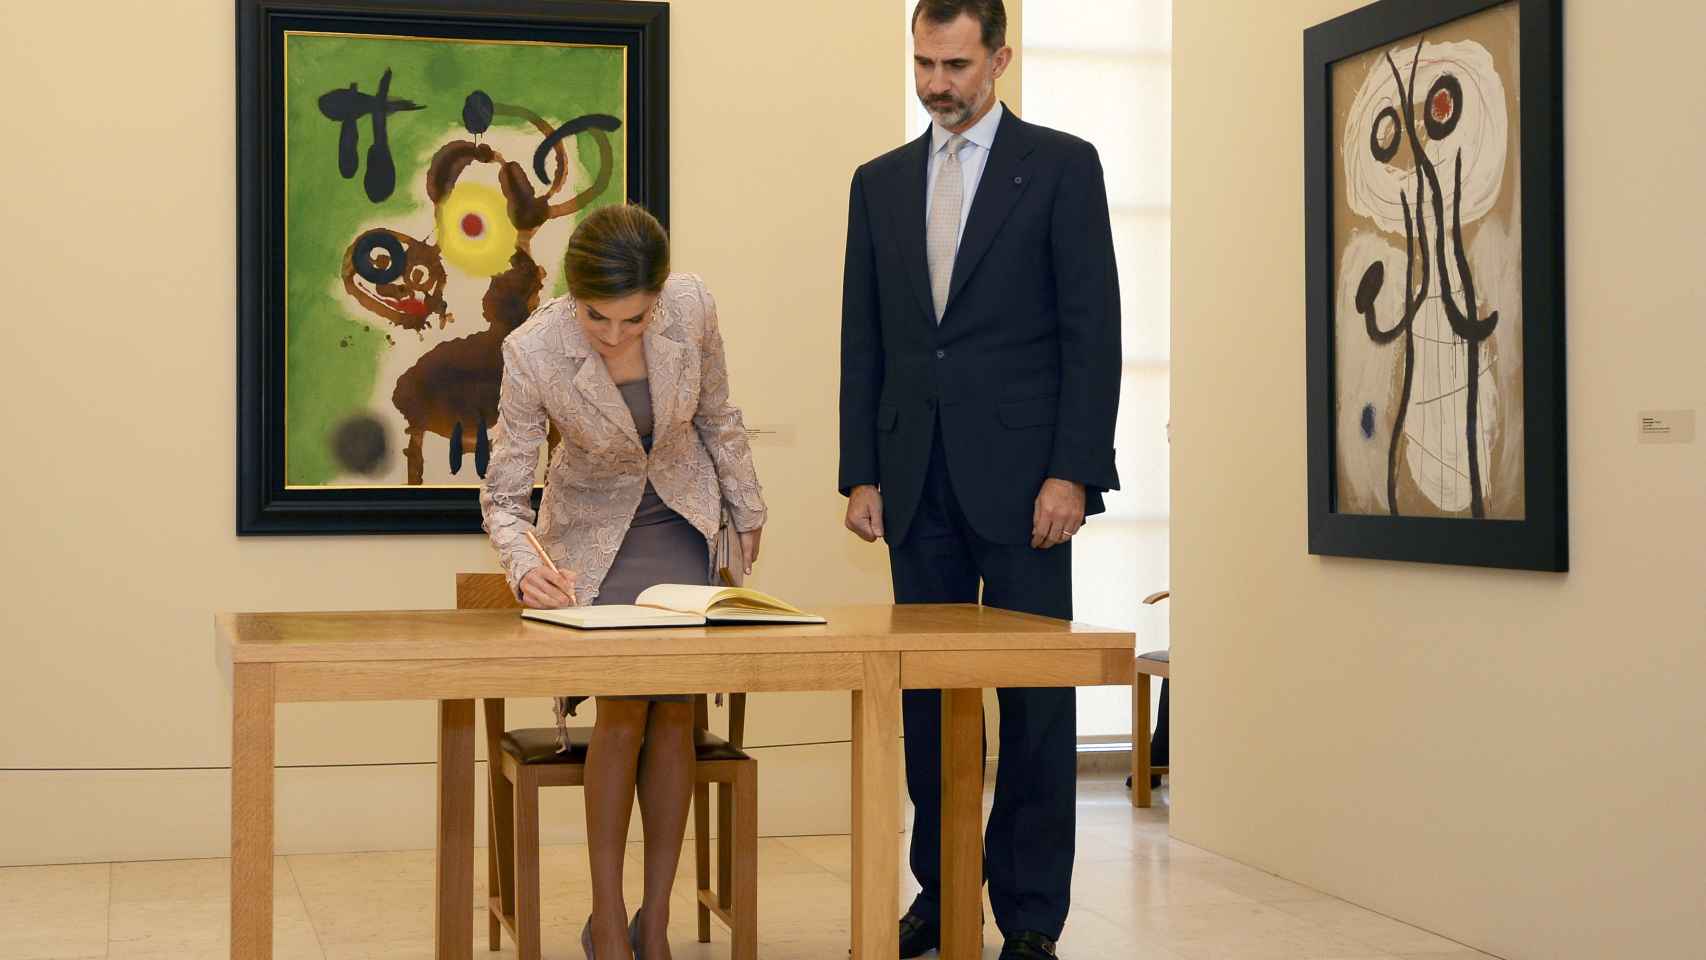 Casi simultáneamente, los reyes visitaban la exposición de Miró en Oporto.